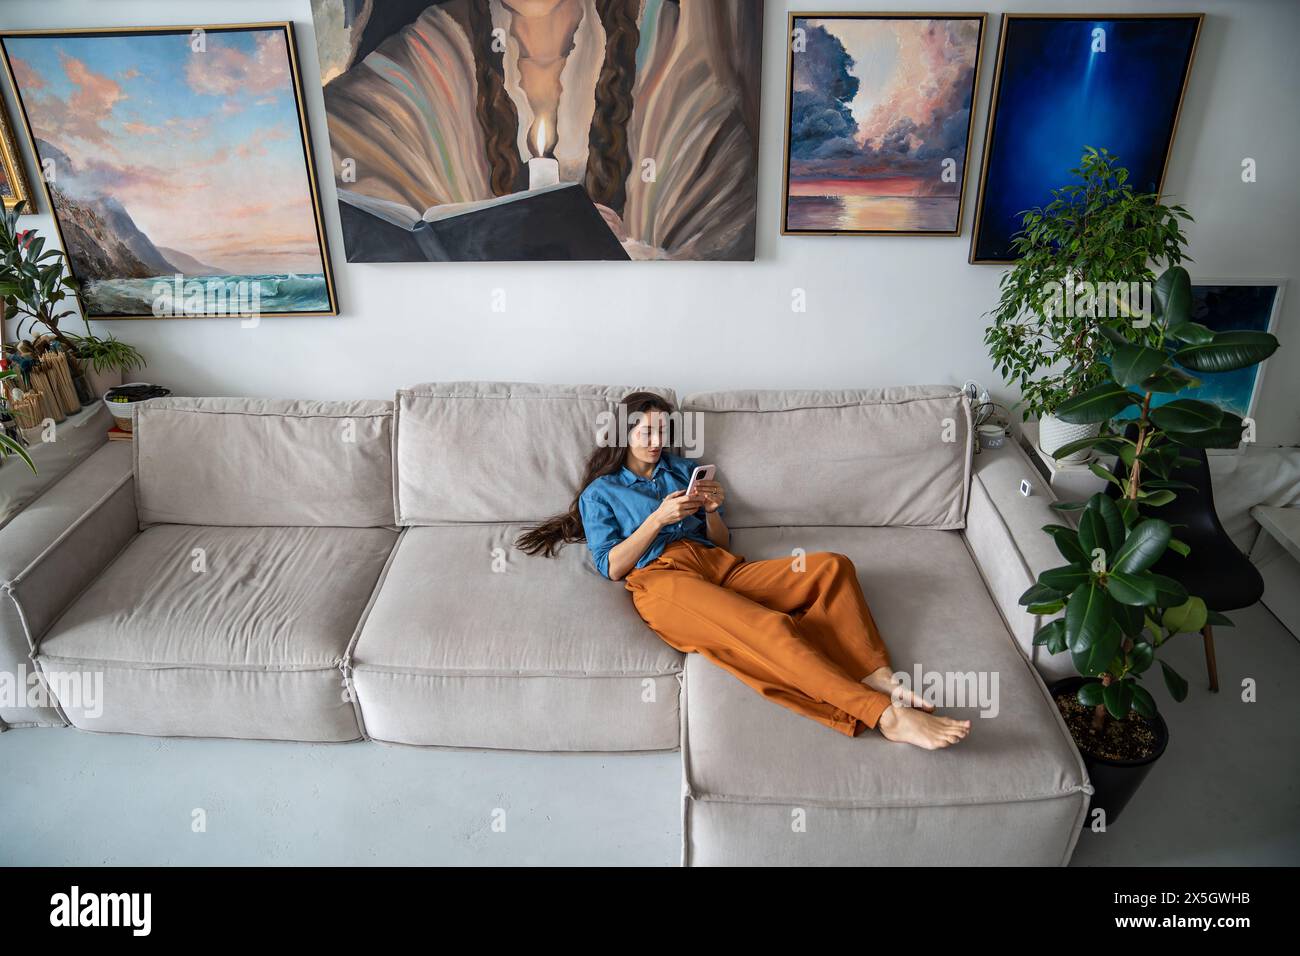 Schlampiges Mädchen, das mit Smartphone auf dem Sofa liegt. Frau, die sich im Kunststudio zu Hause entspannt. Stockfoto